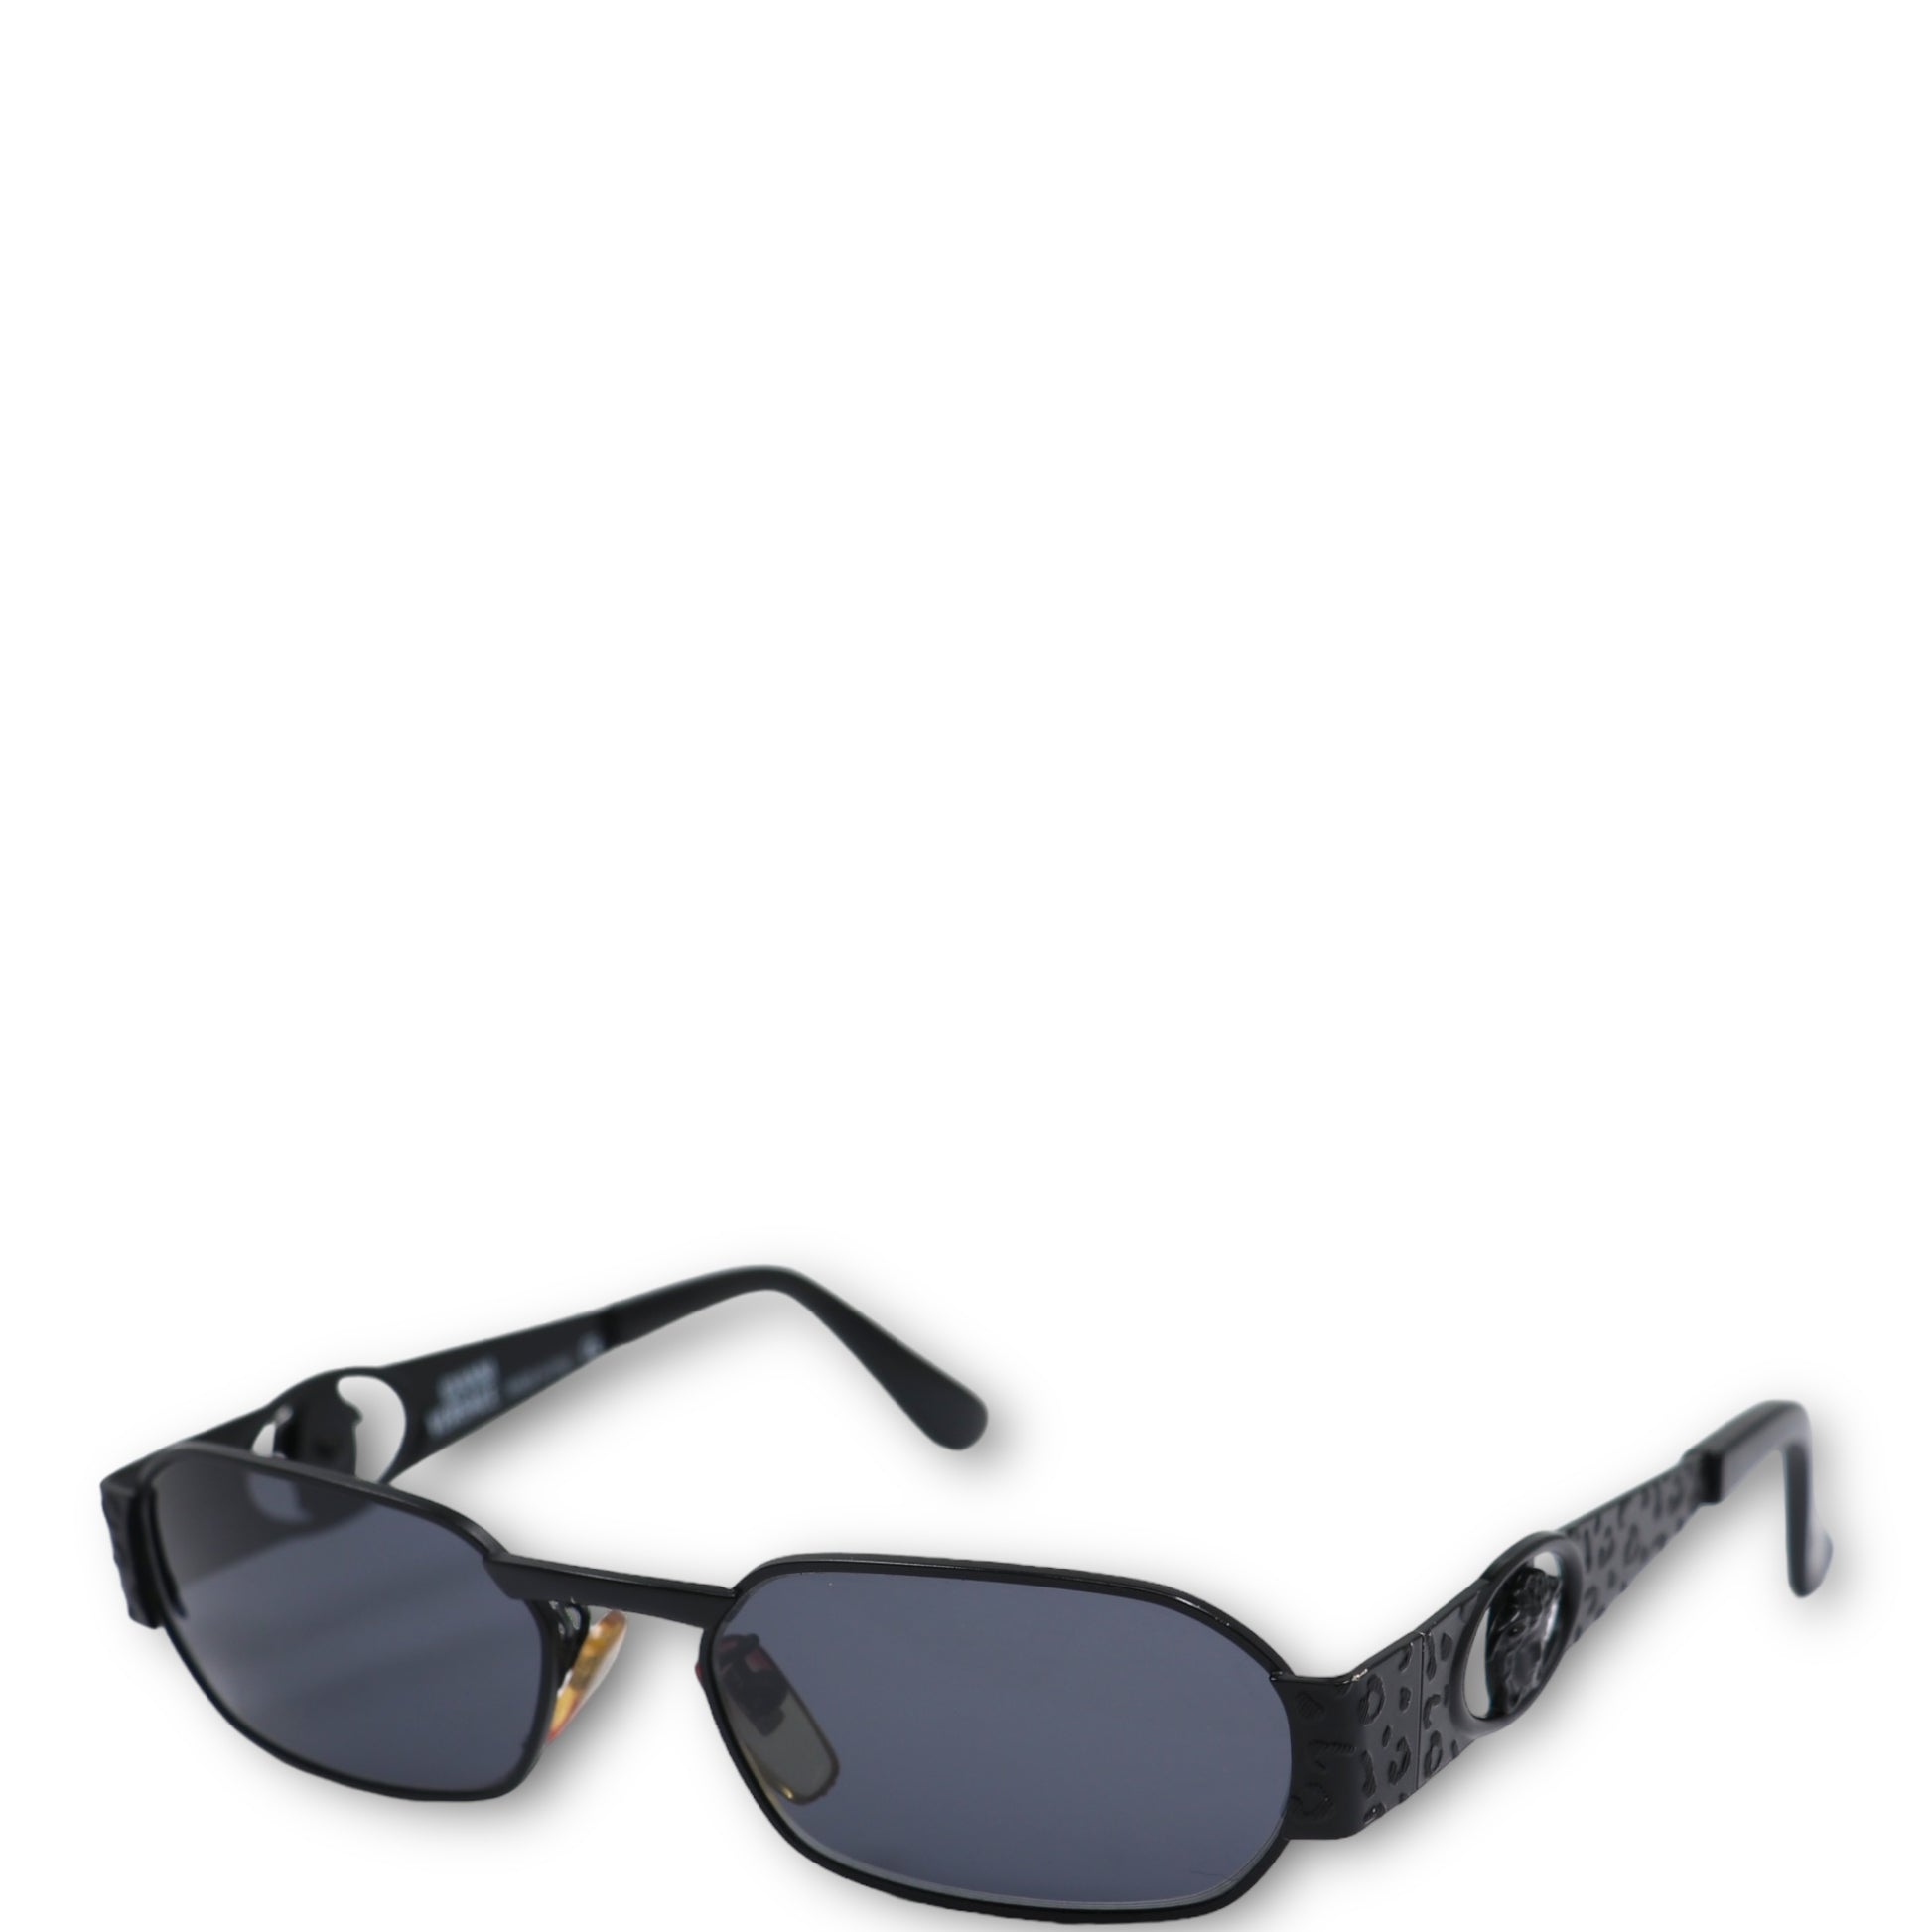 Versace Sonnenbrillen günstig kaufen, Second Hand